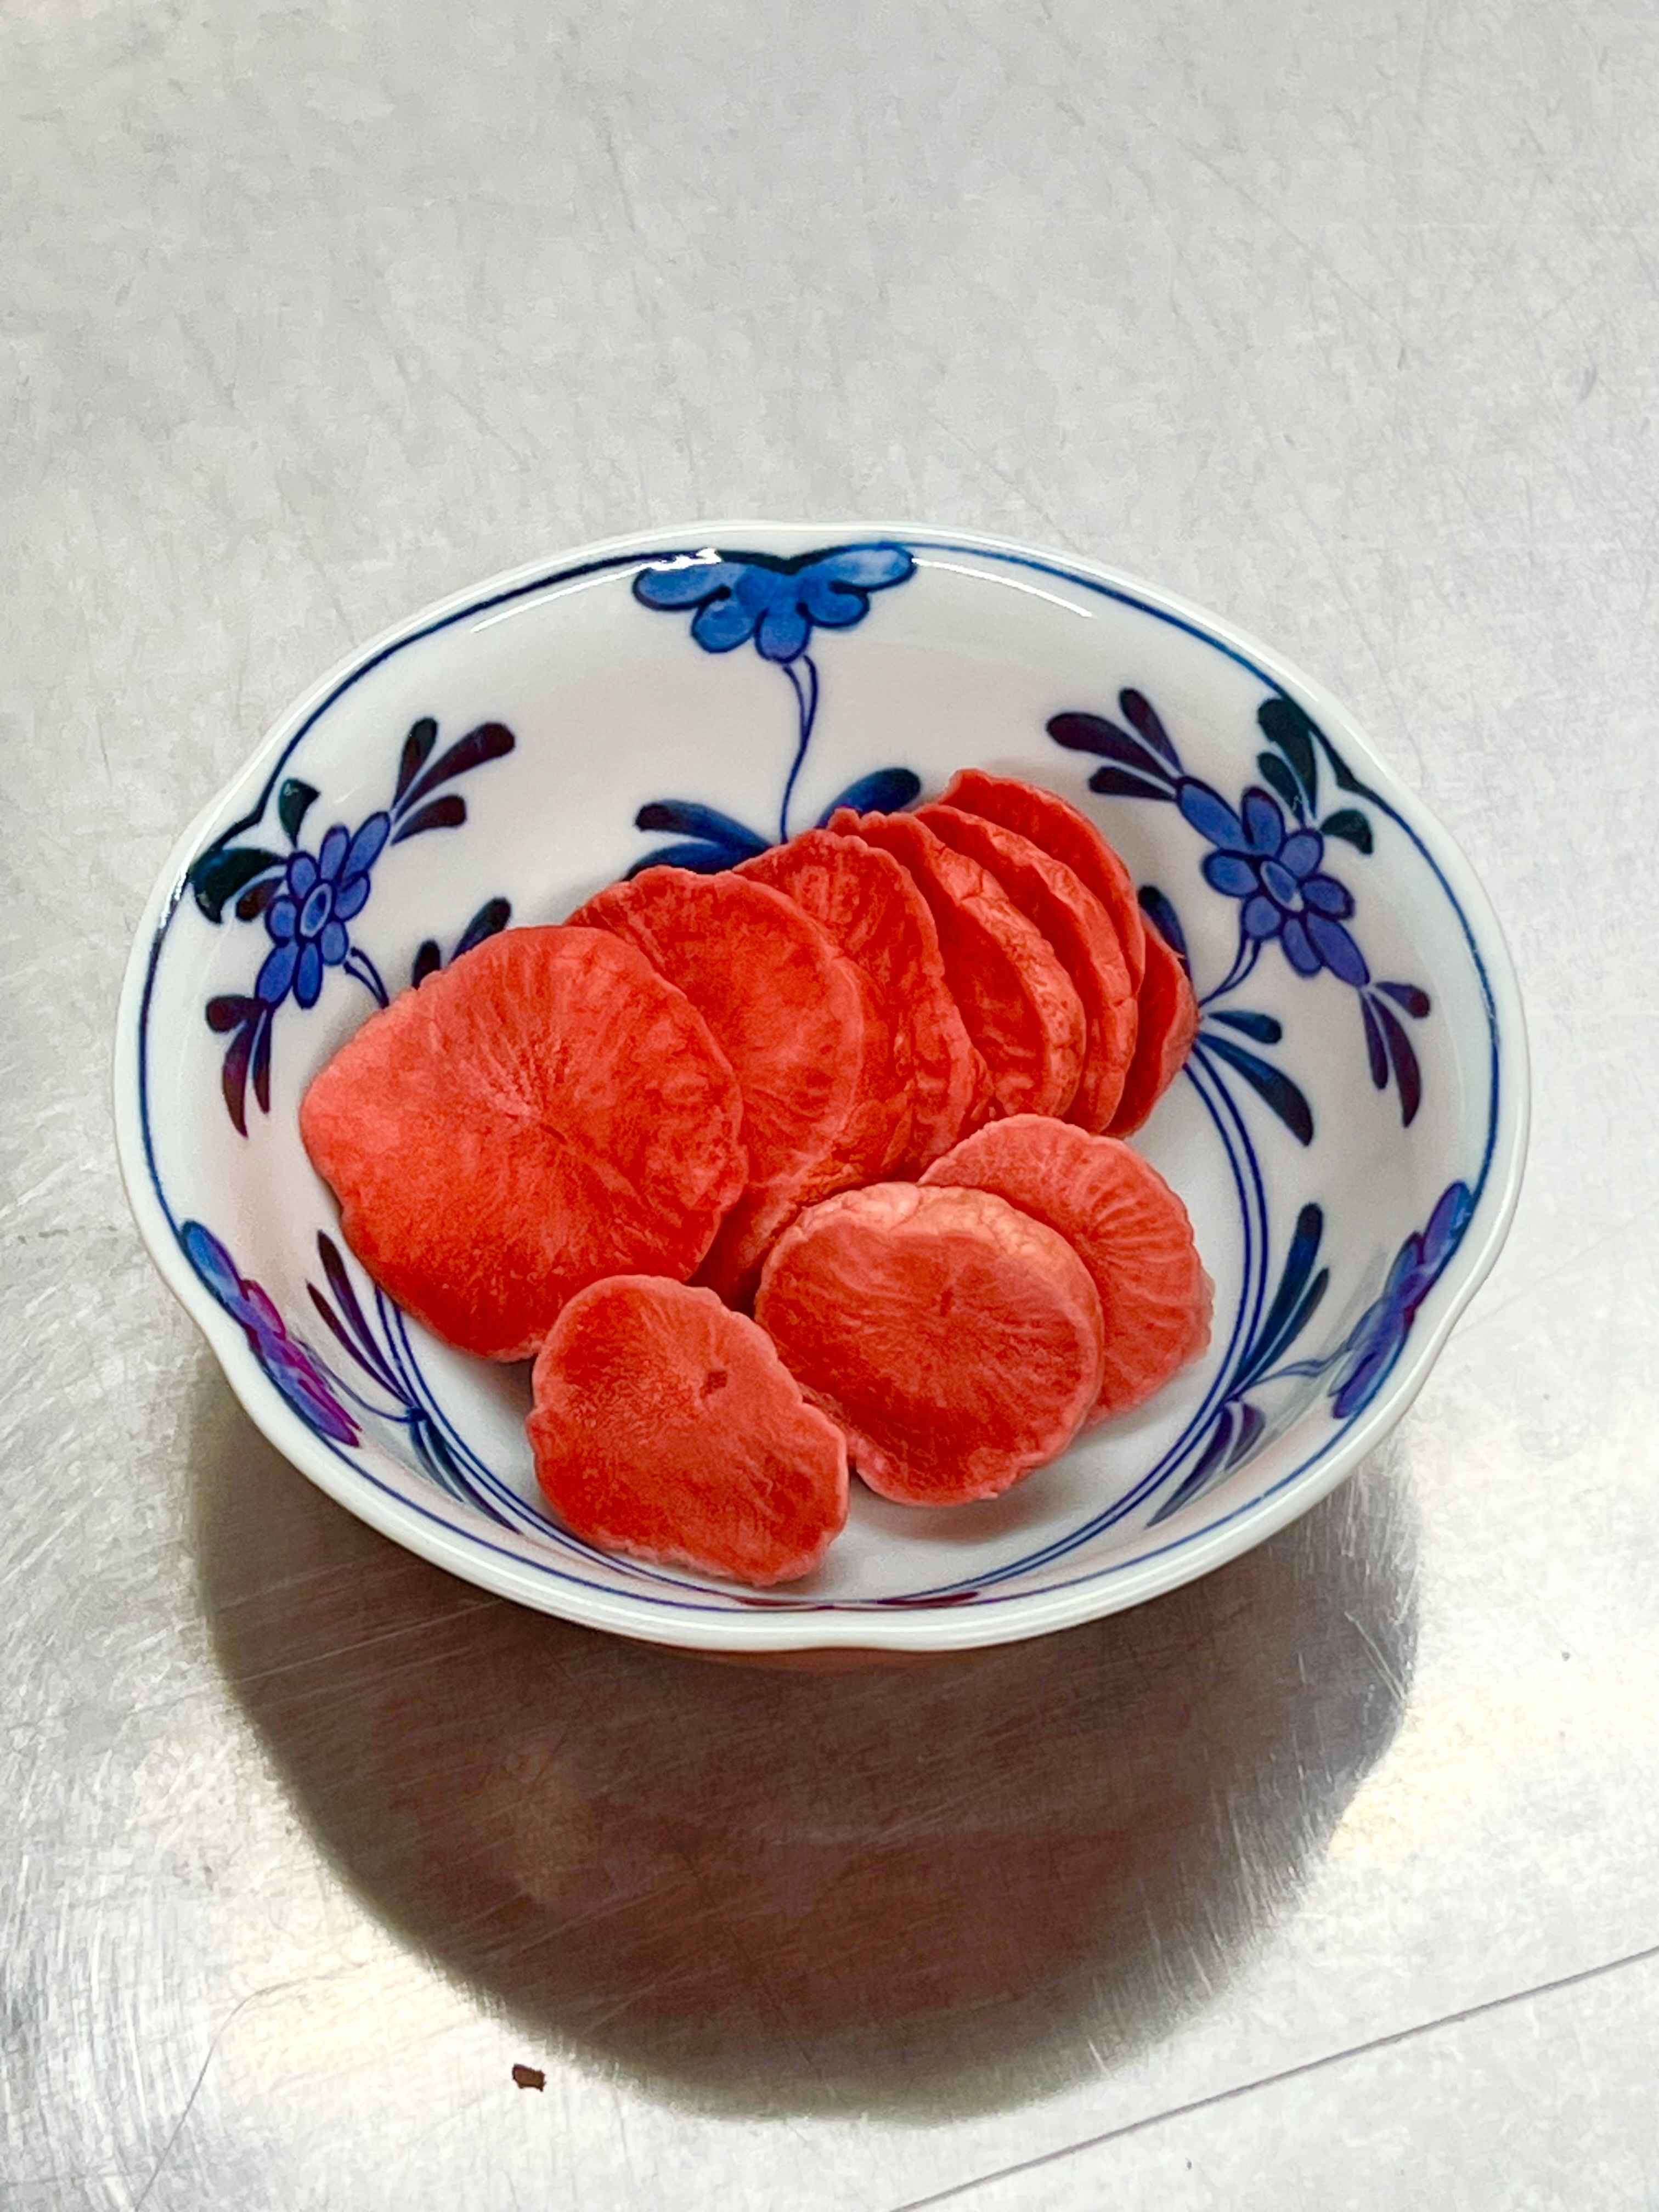 高野山麓精進野菜赤かぶ漬けとロマネスコのピクルス(無添加) 赤かぶ漬け100g(1パック)とロマネスコピクルス200g(2パック)